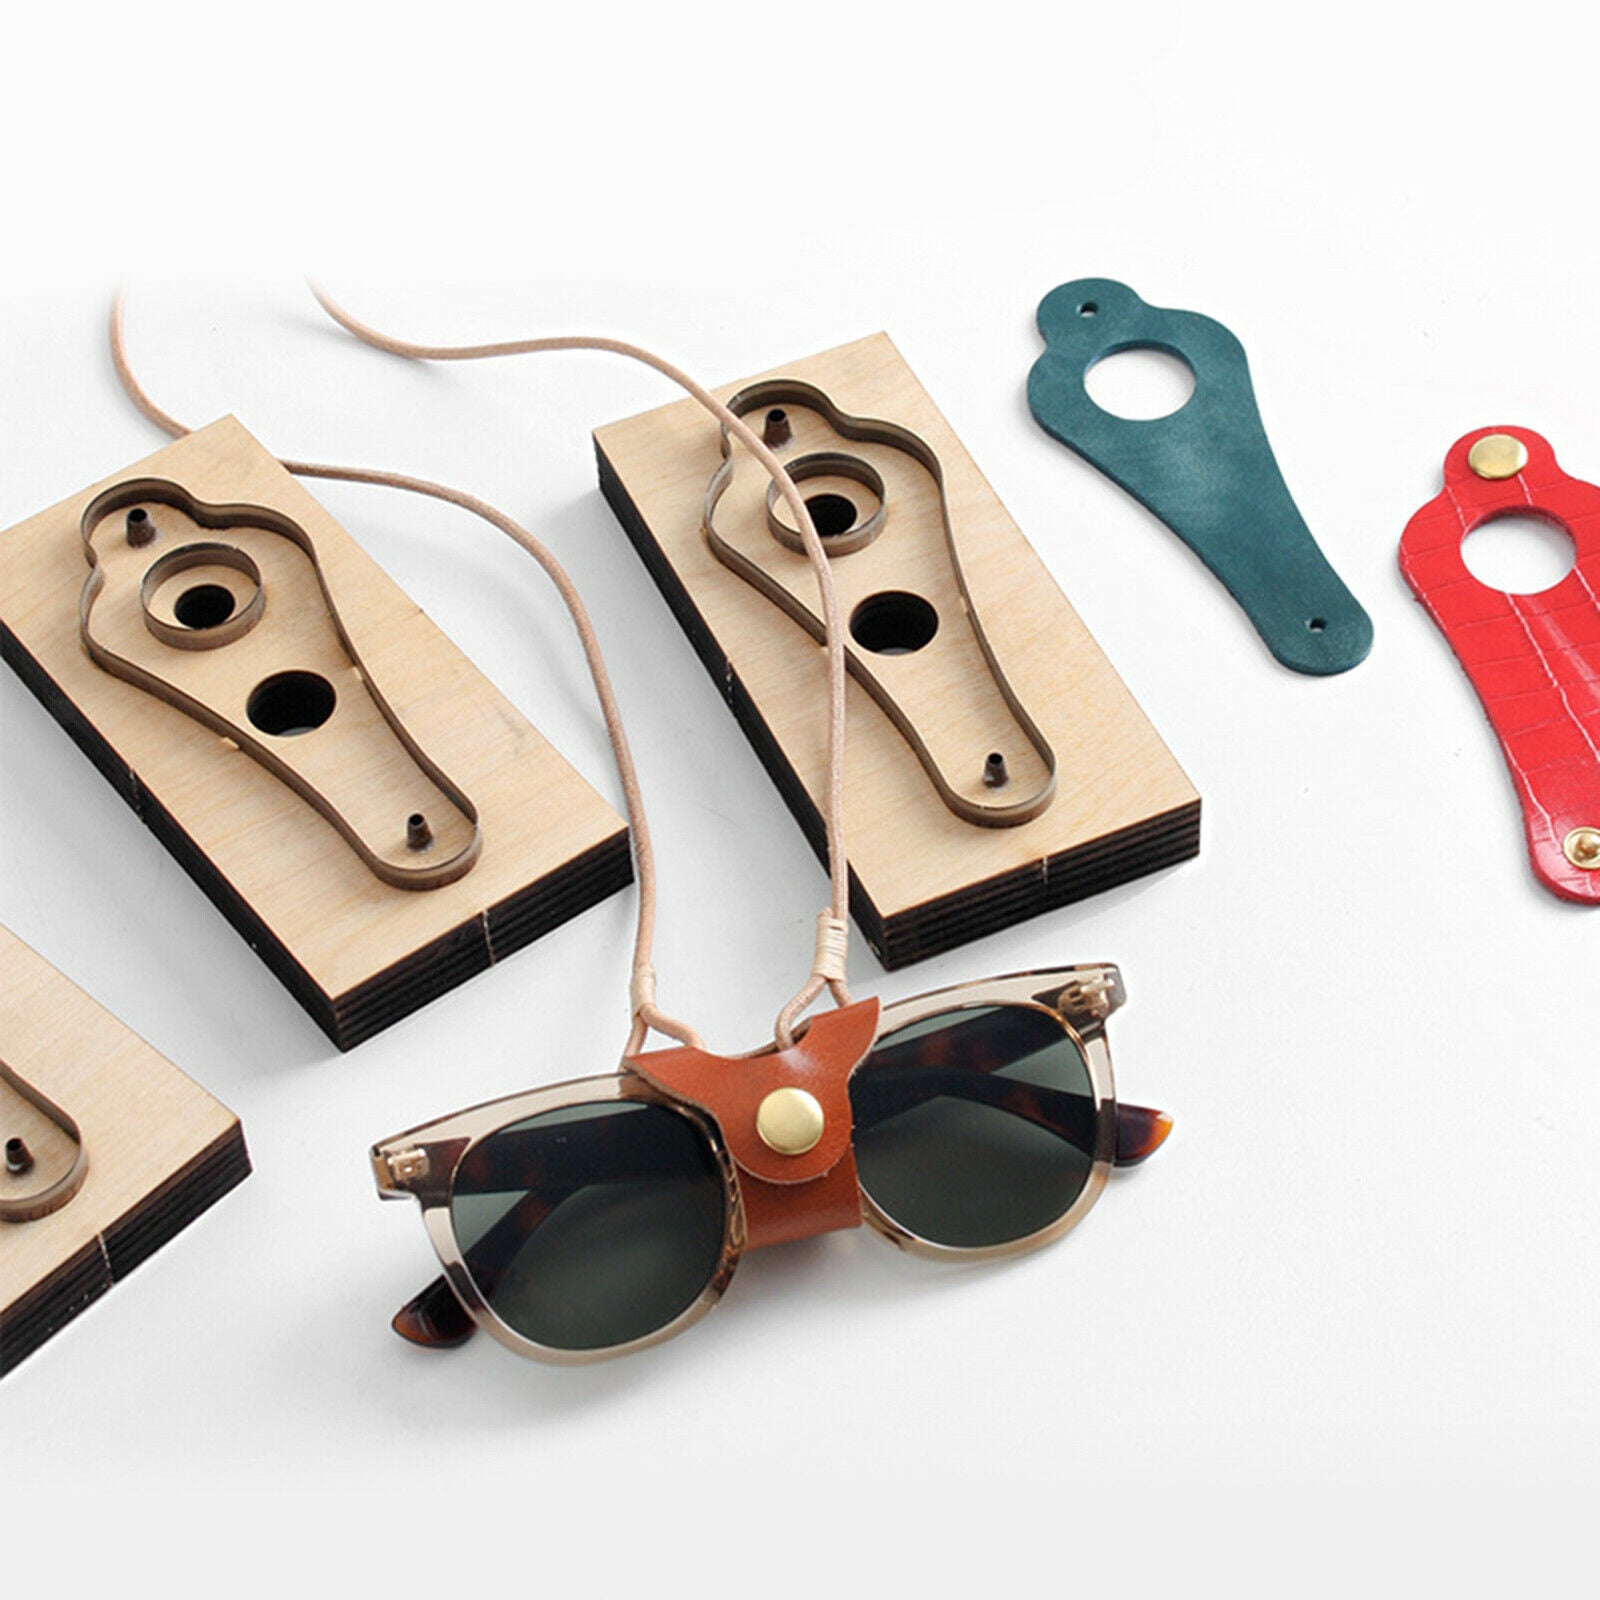 Leather Craft Dies Eyewear Lanyard Cut Mold Glasses Holder Making Blade Tool